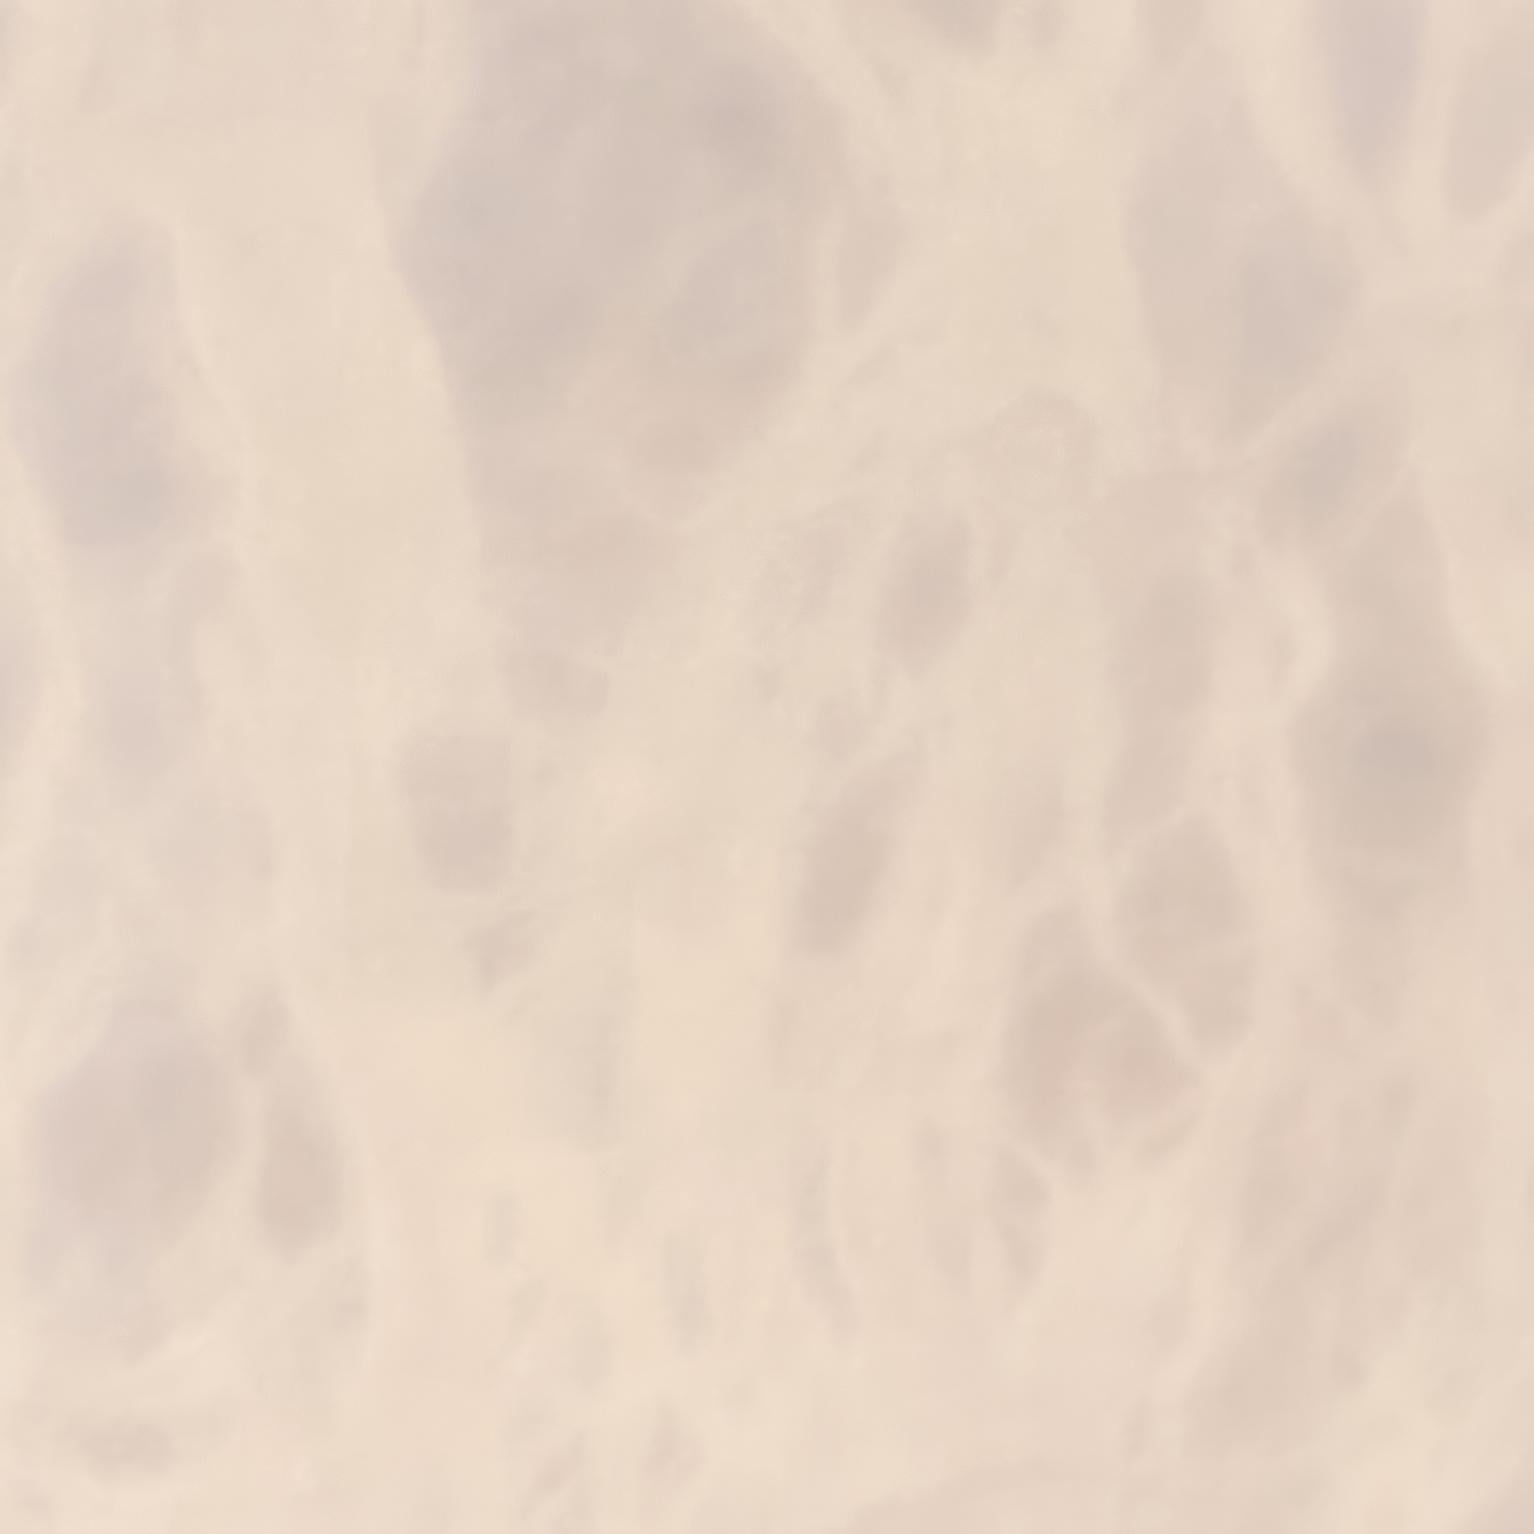 Wandleuchte 'Antibes' aus Alabaster von Denis De La Mesiere. Handgefertigt in Los Angeles in der Werkstatt des renommierten französischen Designers und Antiquitätenhändlers Denis de le Mesiere, der die Arbeit von Pierre Chareau mit akribischer Liebe